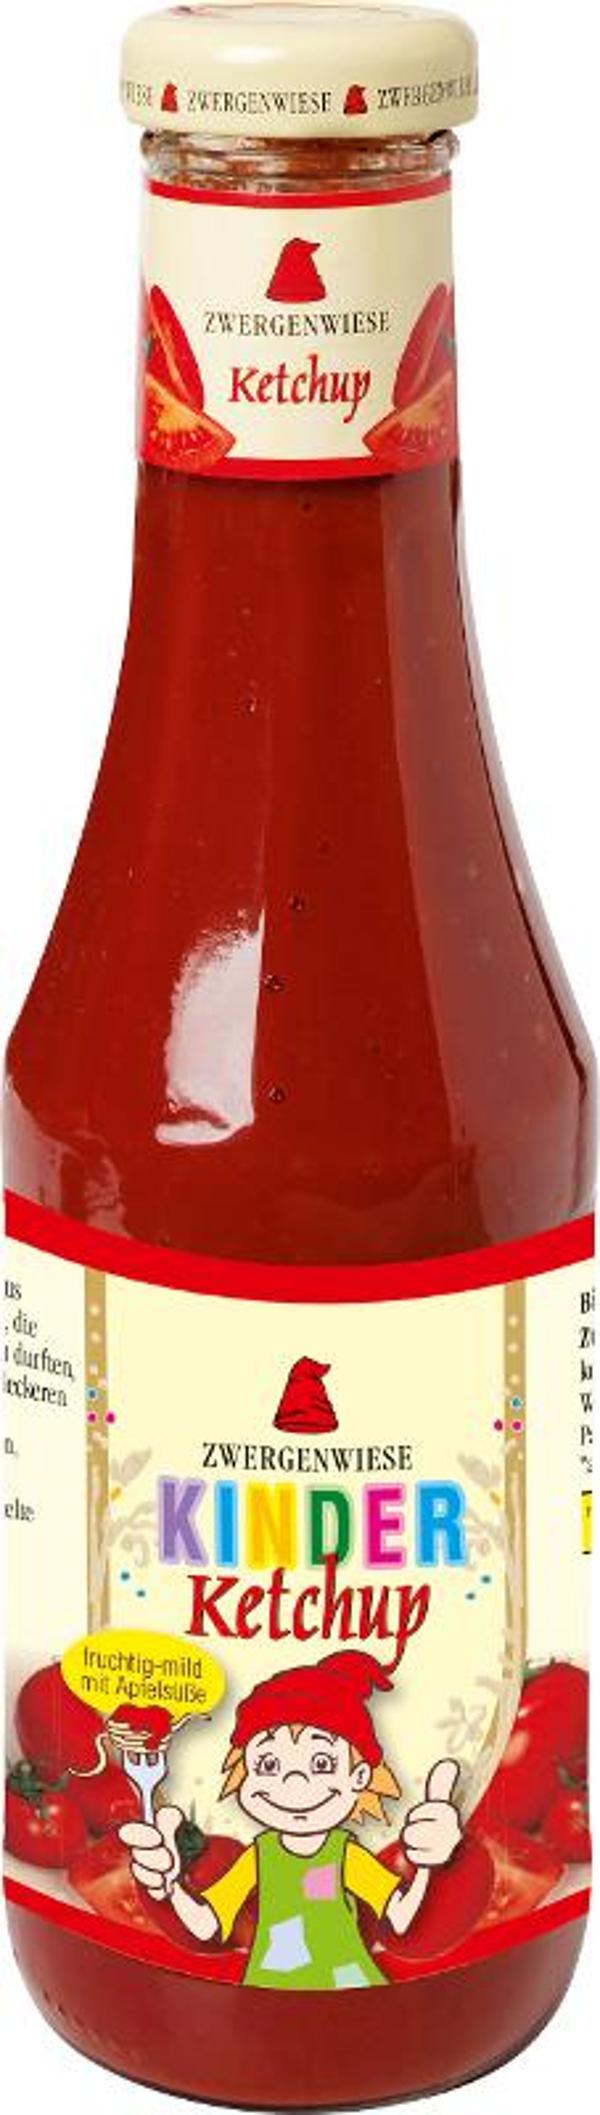 Produktfoto zu Kinder Ketchup ohne Zucker von Zwergenwiese